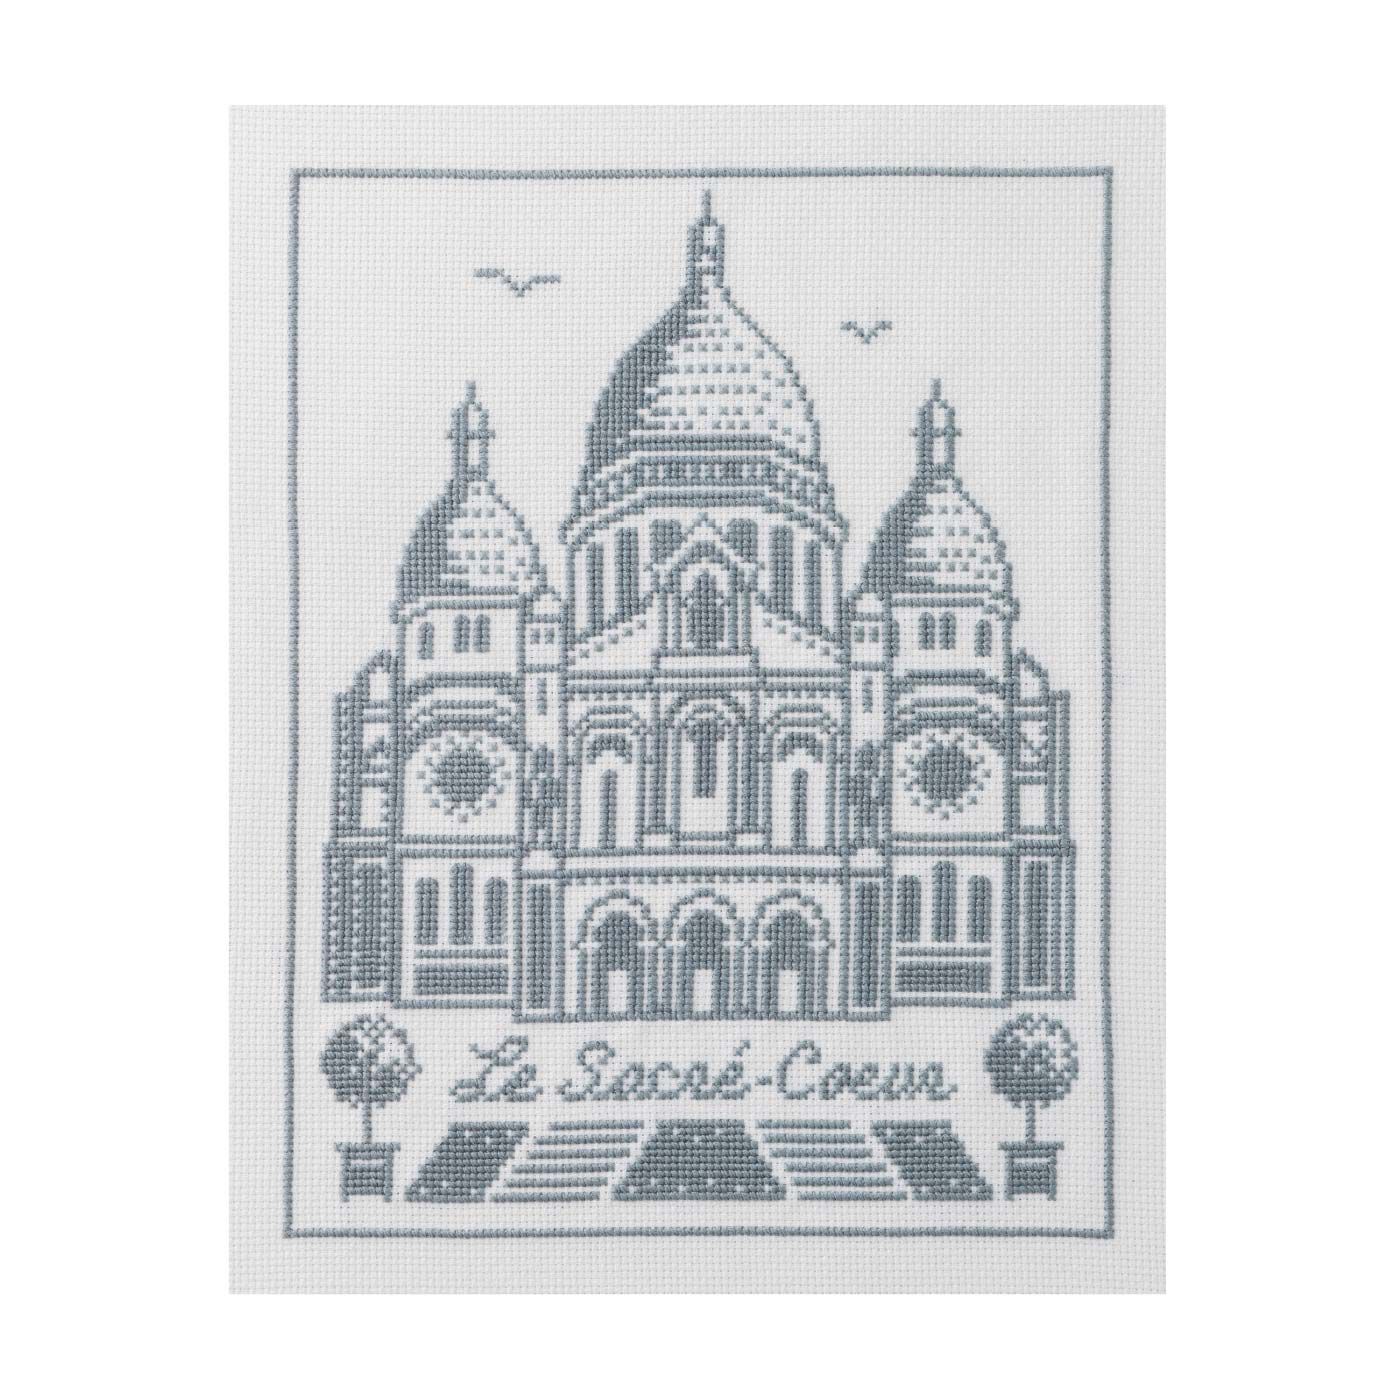 クチュリエ|パリの街並みをモノクロームで描くクロスステッチ|Le Sacre-Coeur：サクレ・クール寺院